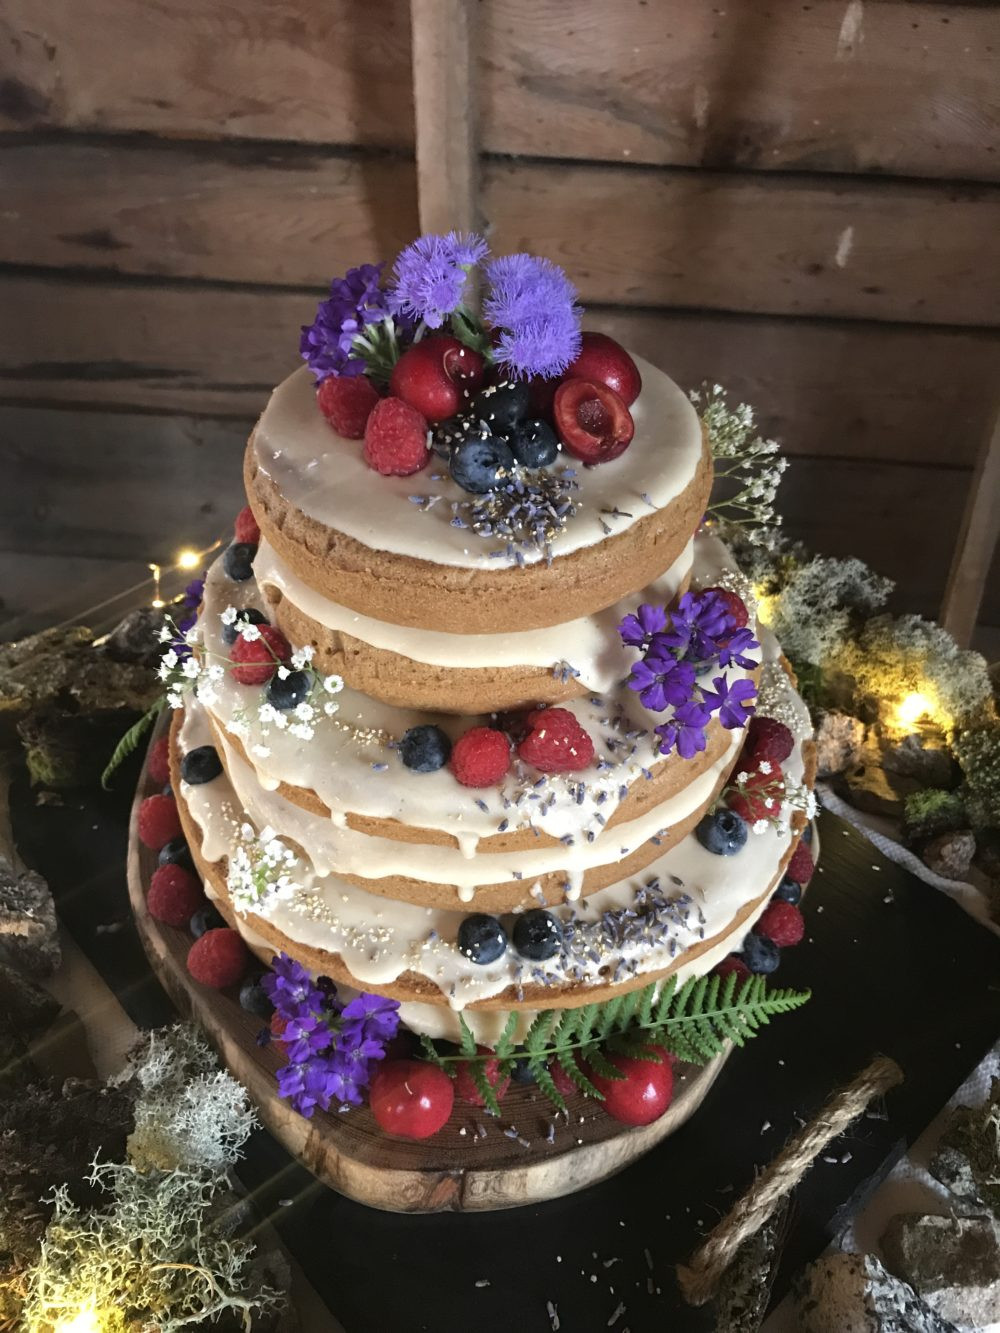 Vegan Wedding Cake Recipes
 How I Made a Glam 3 Tier Vegan Wedding Cake & Lived to